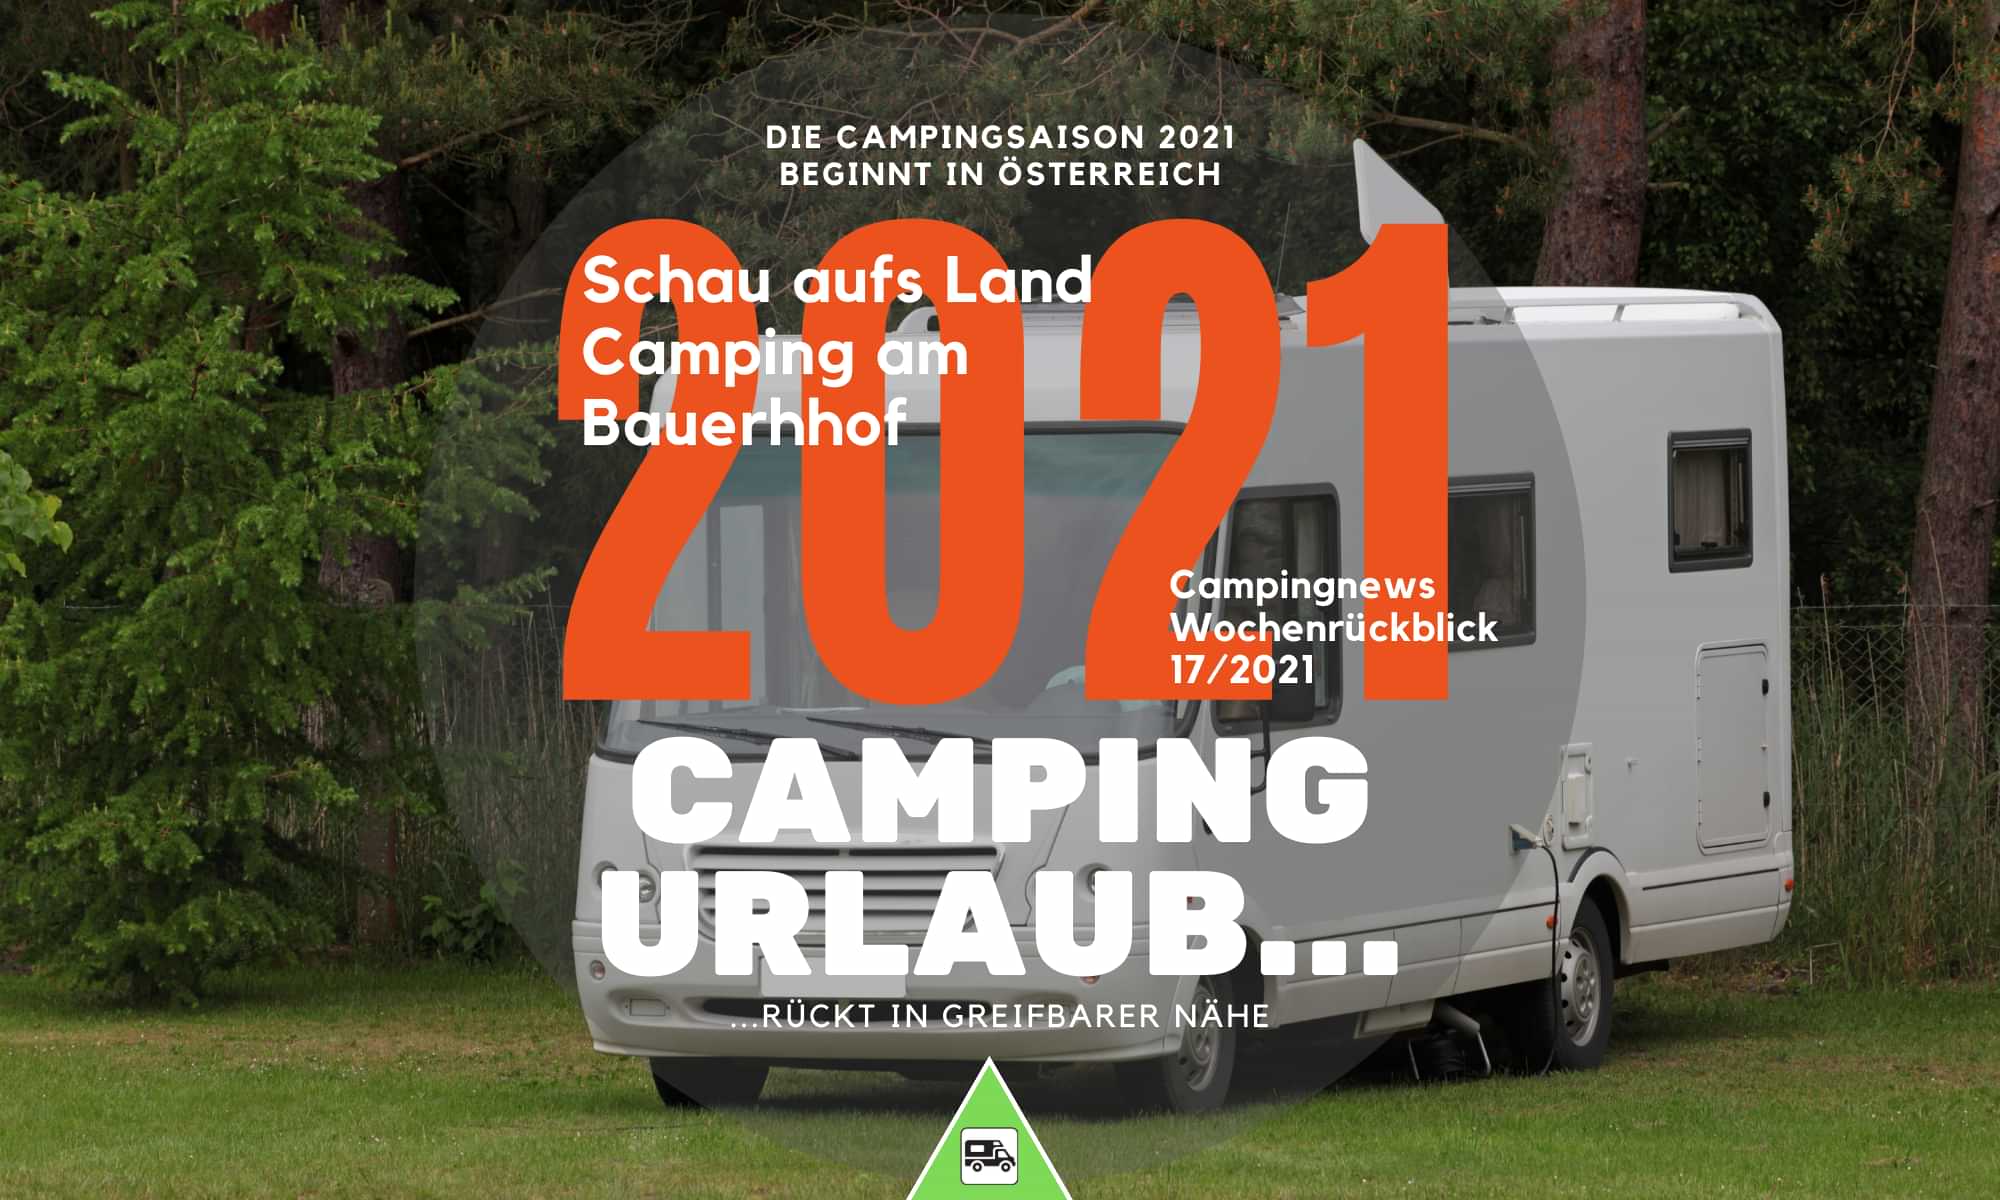 Camping Österreich – Die Campingsaison 2021 beginnt in Österreich